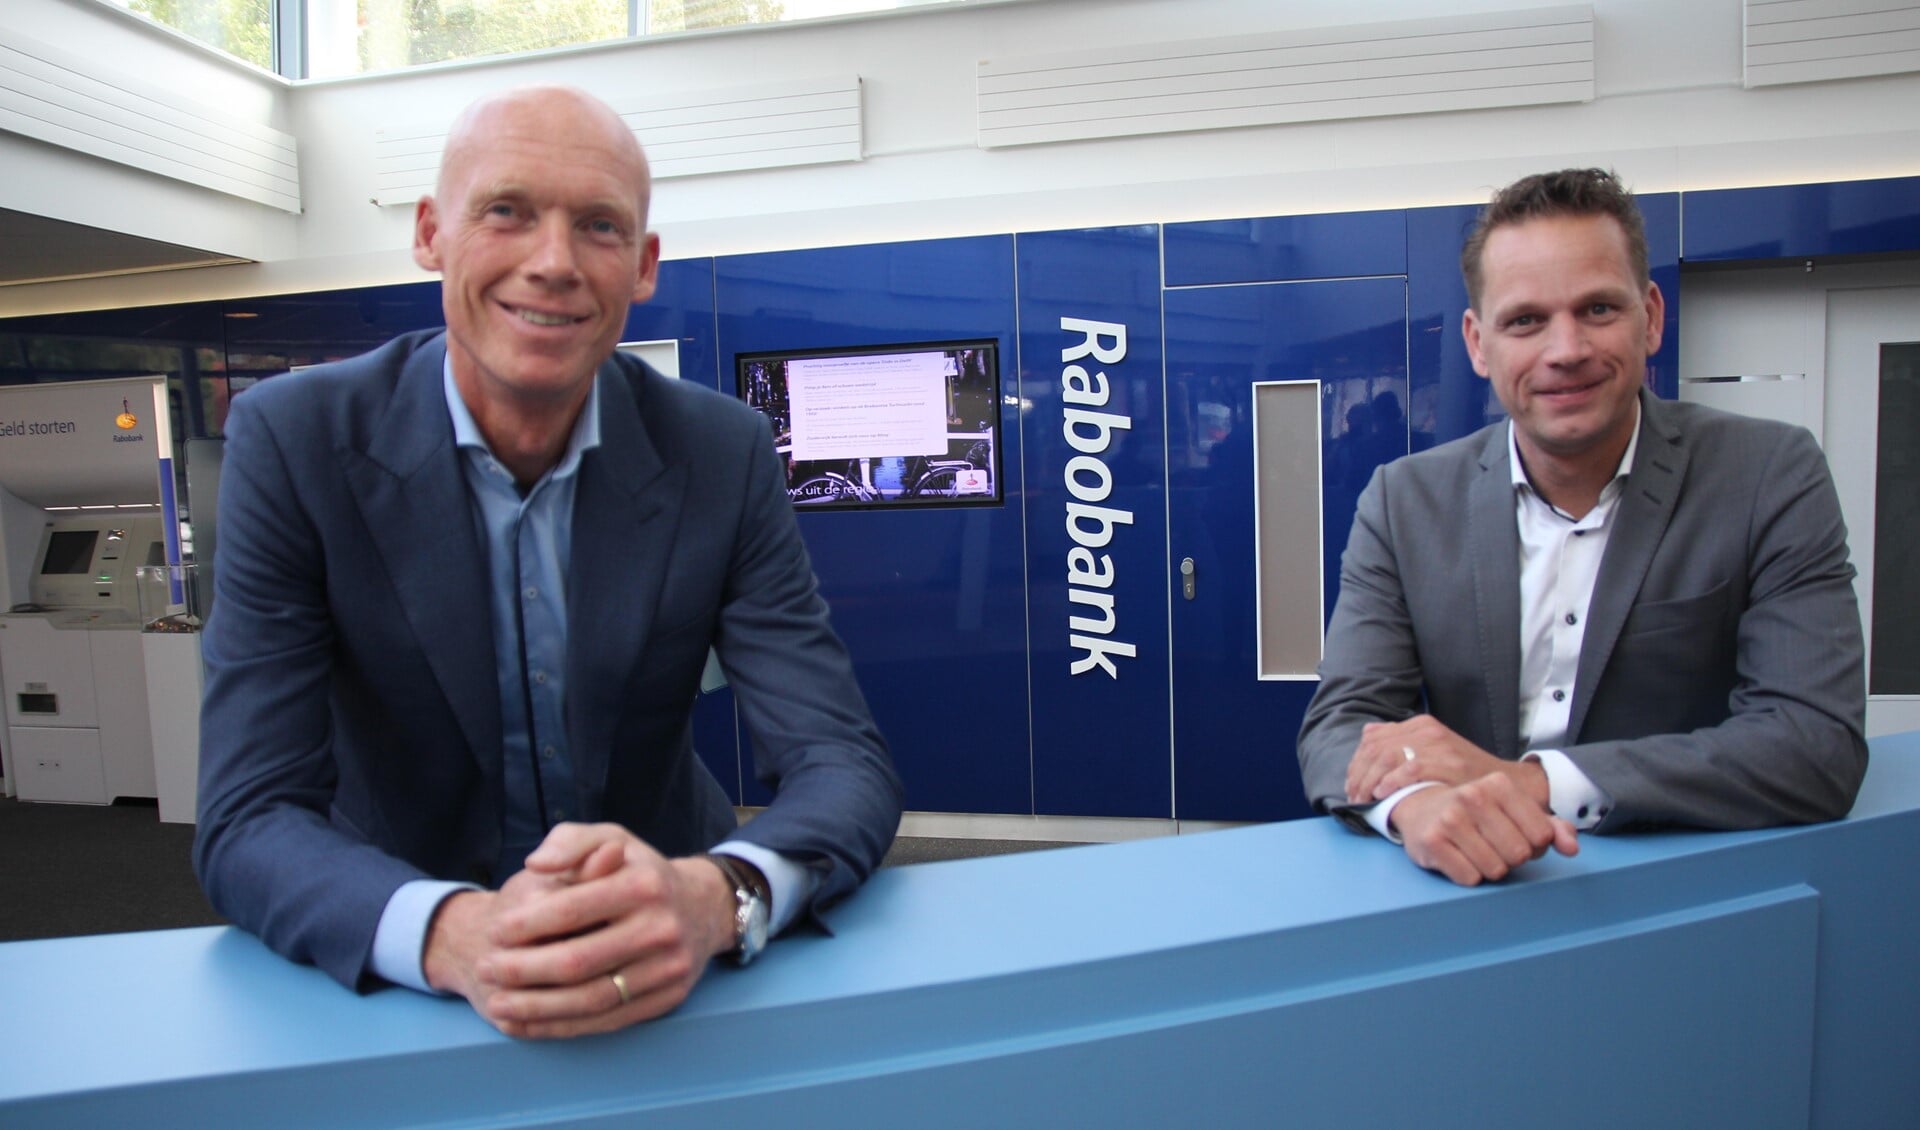 Fabian van der Horst en Sander Vroom zijn er trots op dat de Rabobank als enig bedrijf al meer dan tien jaar direct betrokken is bij de organisatie van de Oostlanddag.